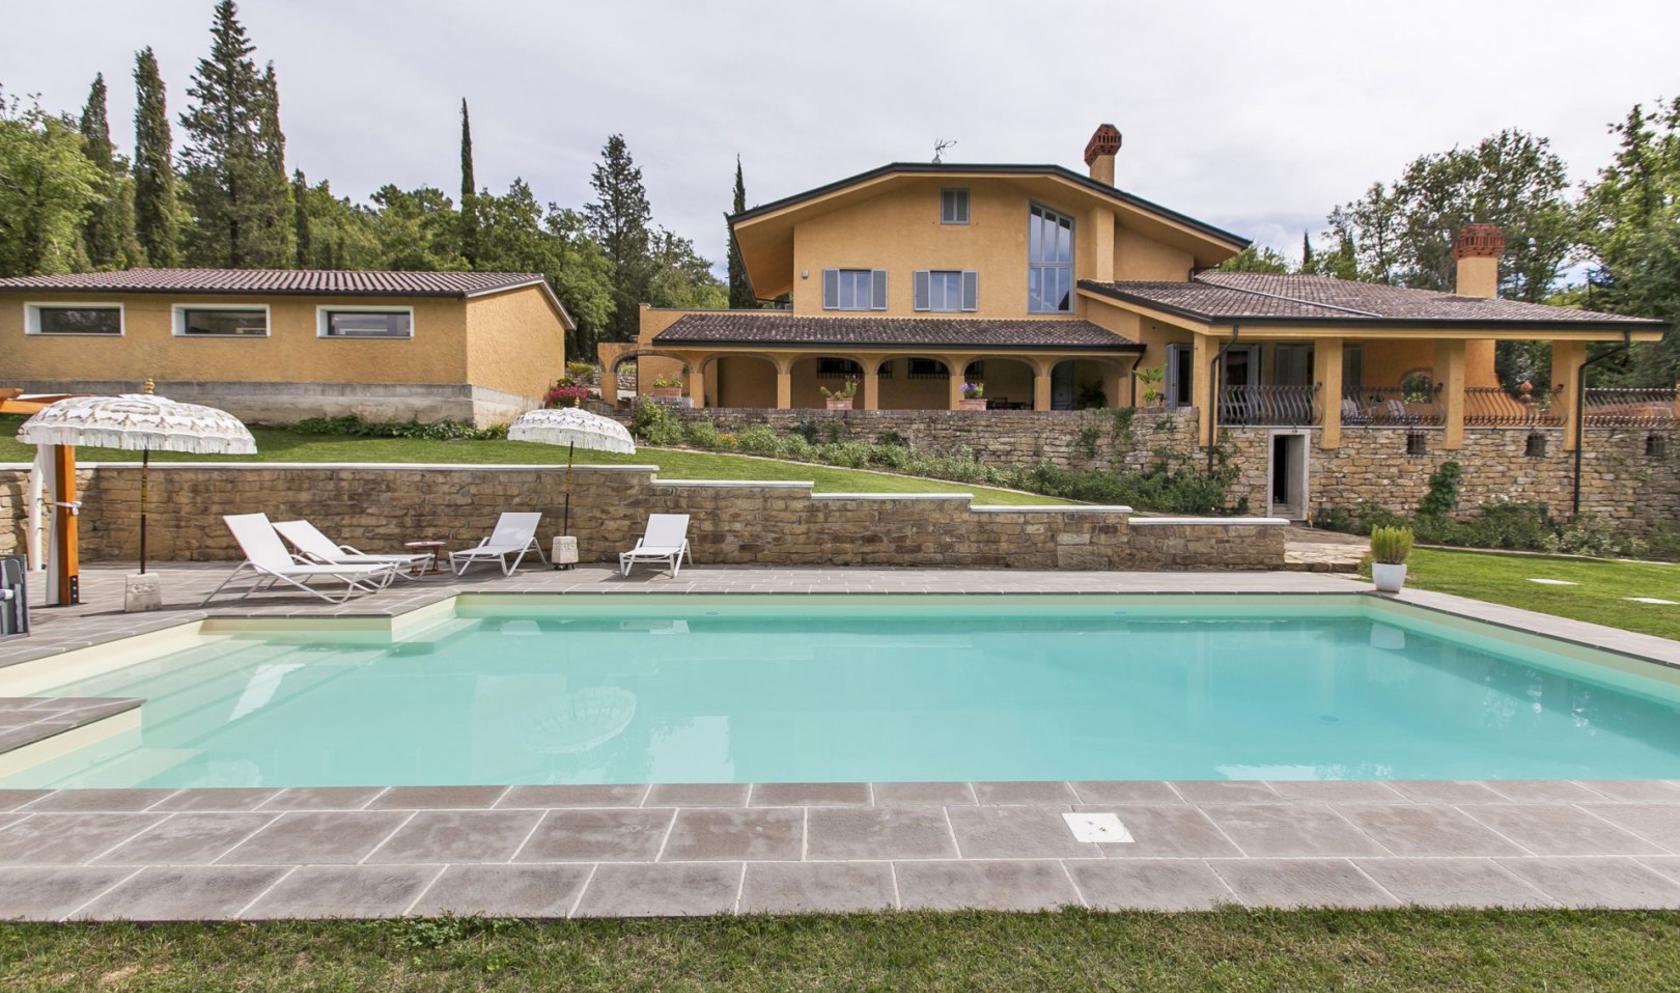 Toscana Immobiliare - Prestigious Villa for sale in the province of Arezzo.